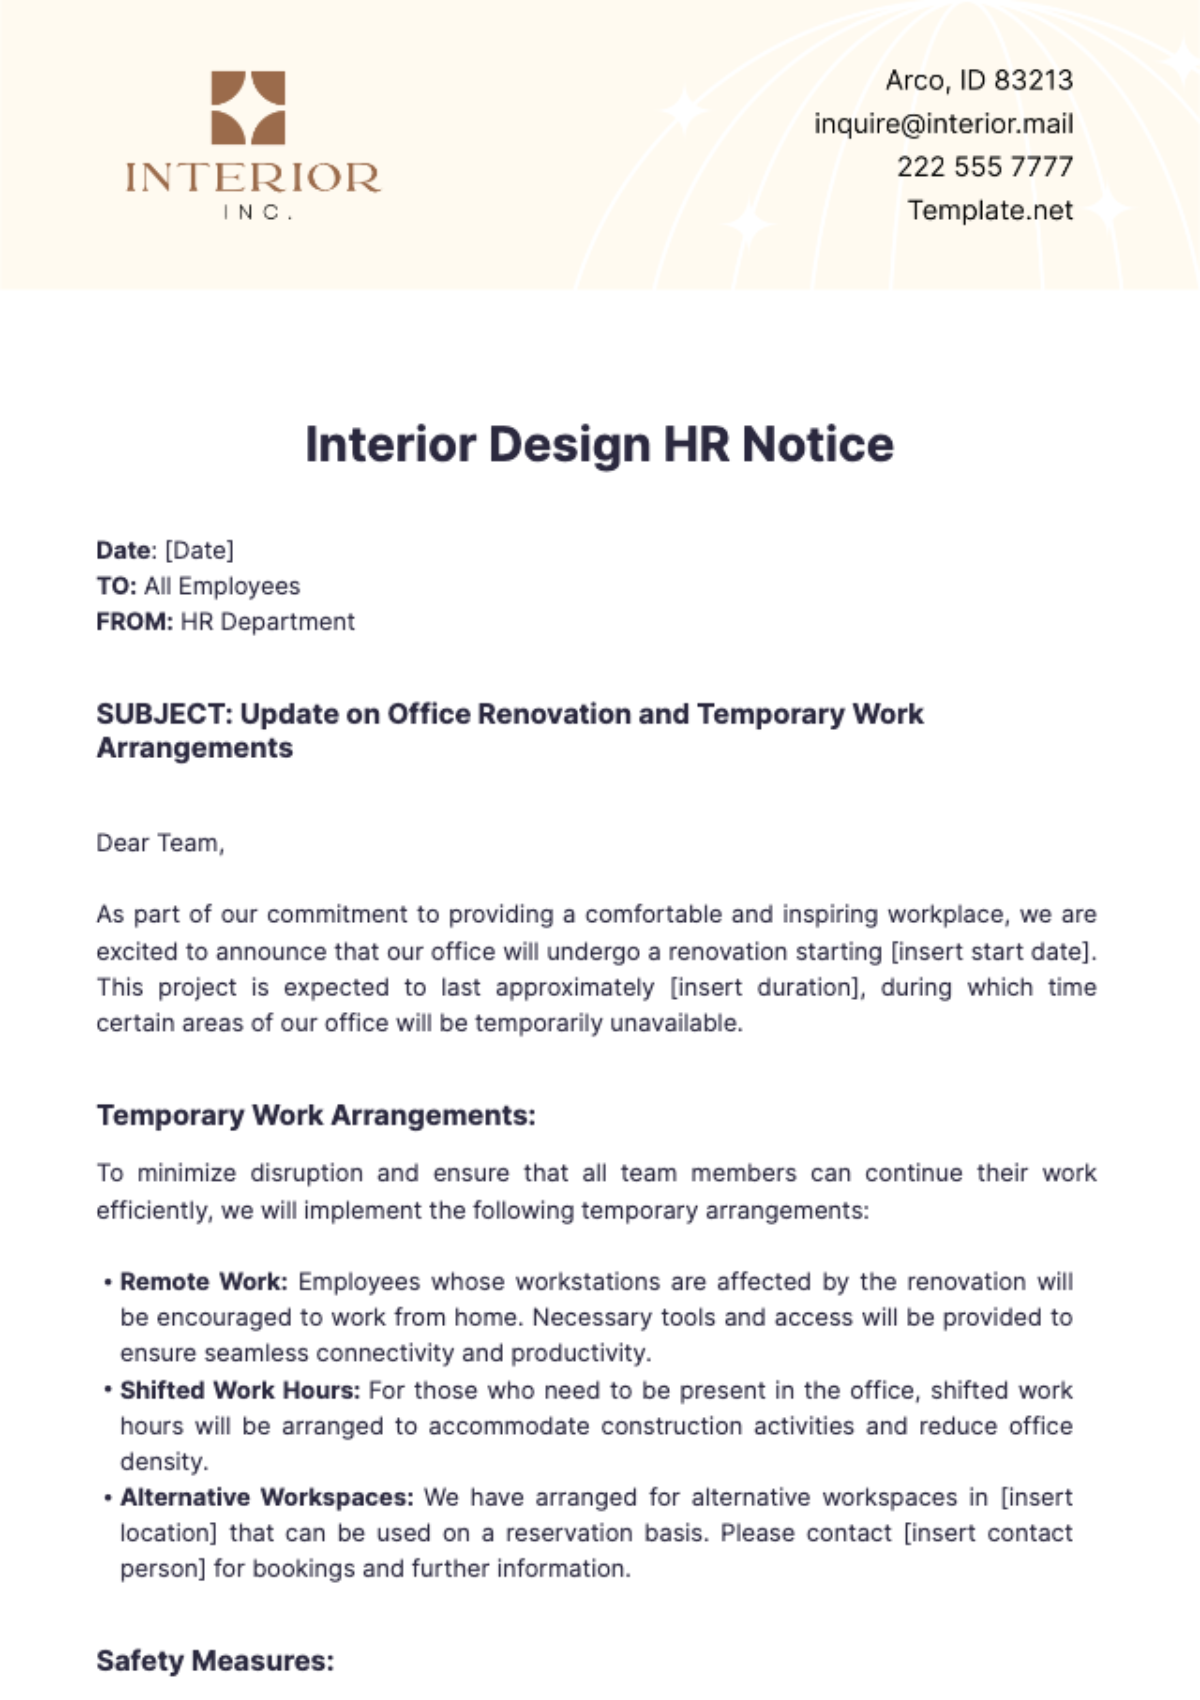 Free Interior Design HR Notice Template